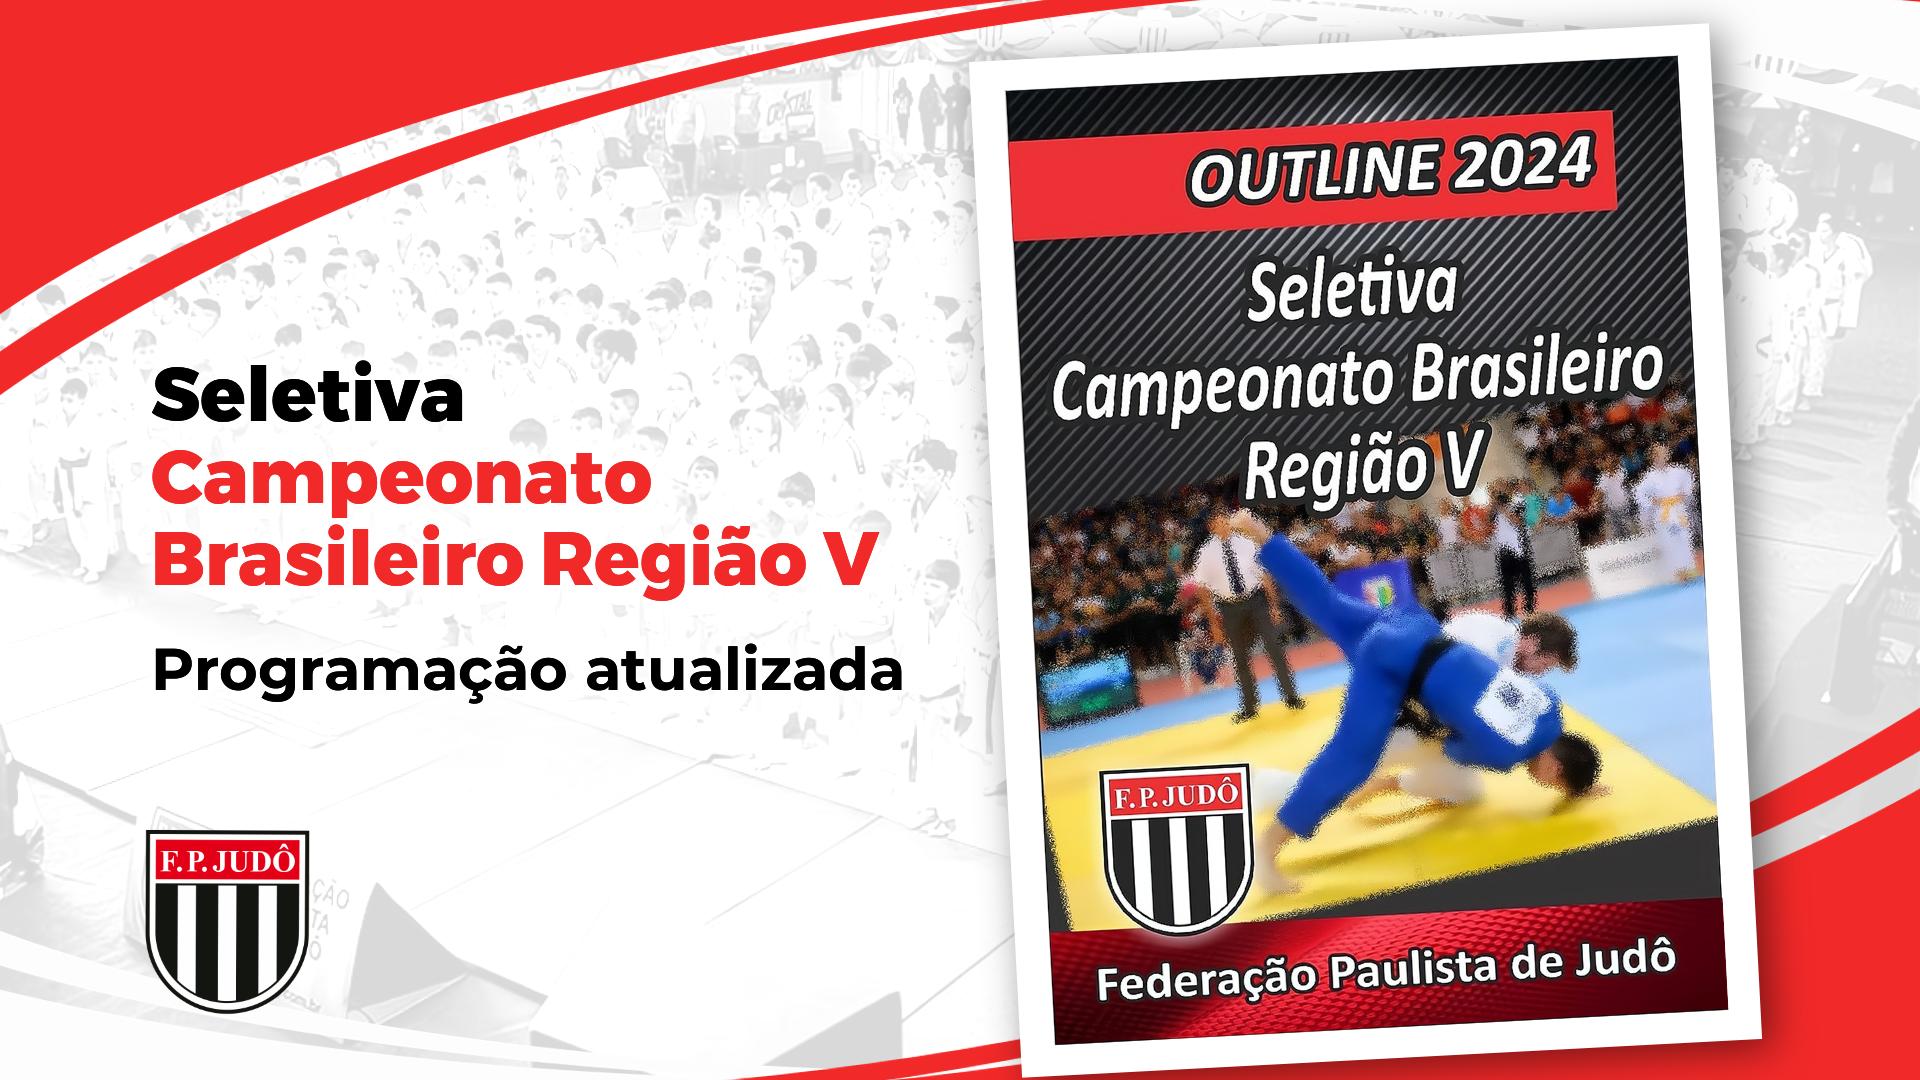 Outline Final Seletiva Brasileiro Regional - programação atualizada